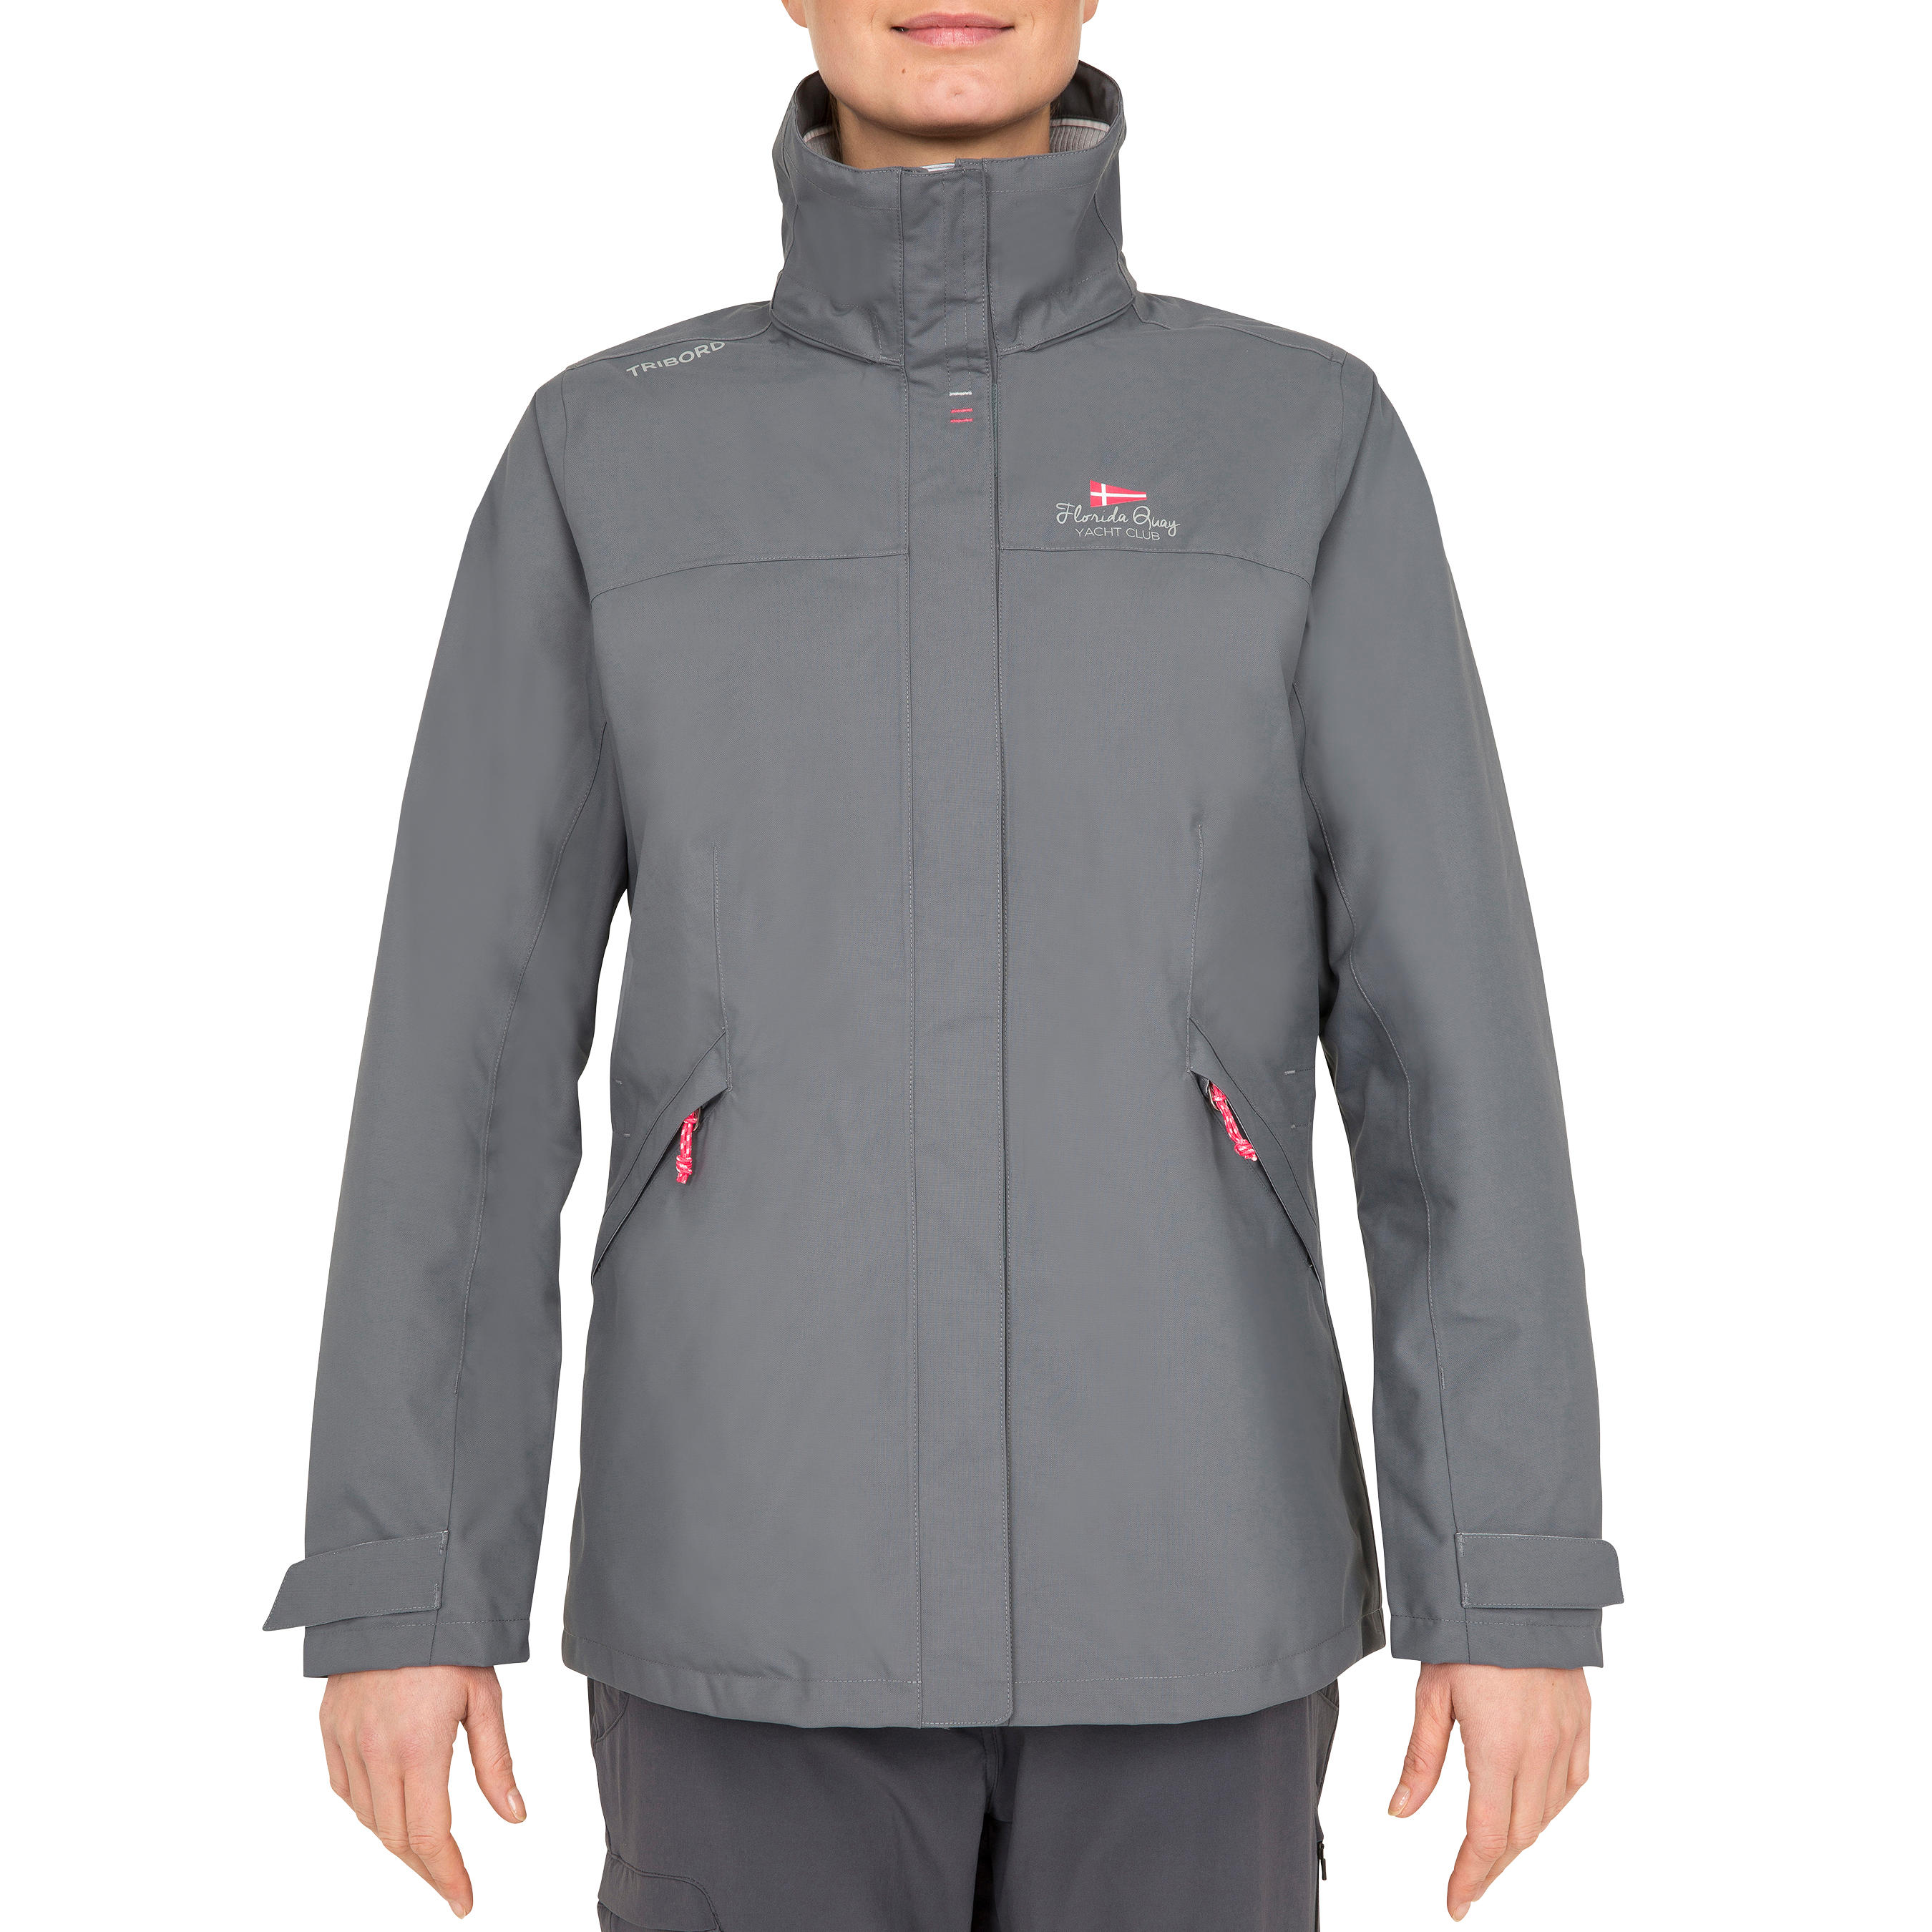 Coastal 100 women's waterproof, windproof, breathable jacket - grey 9/22